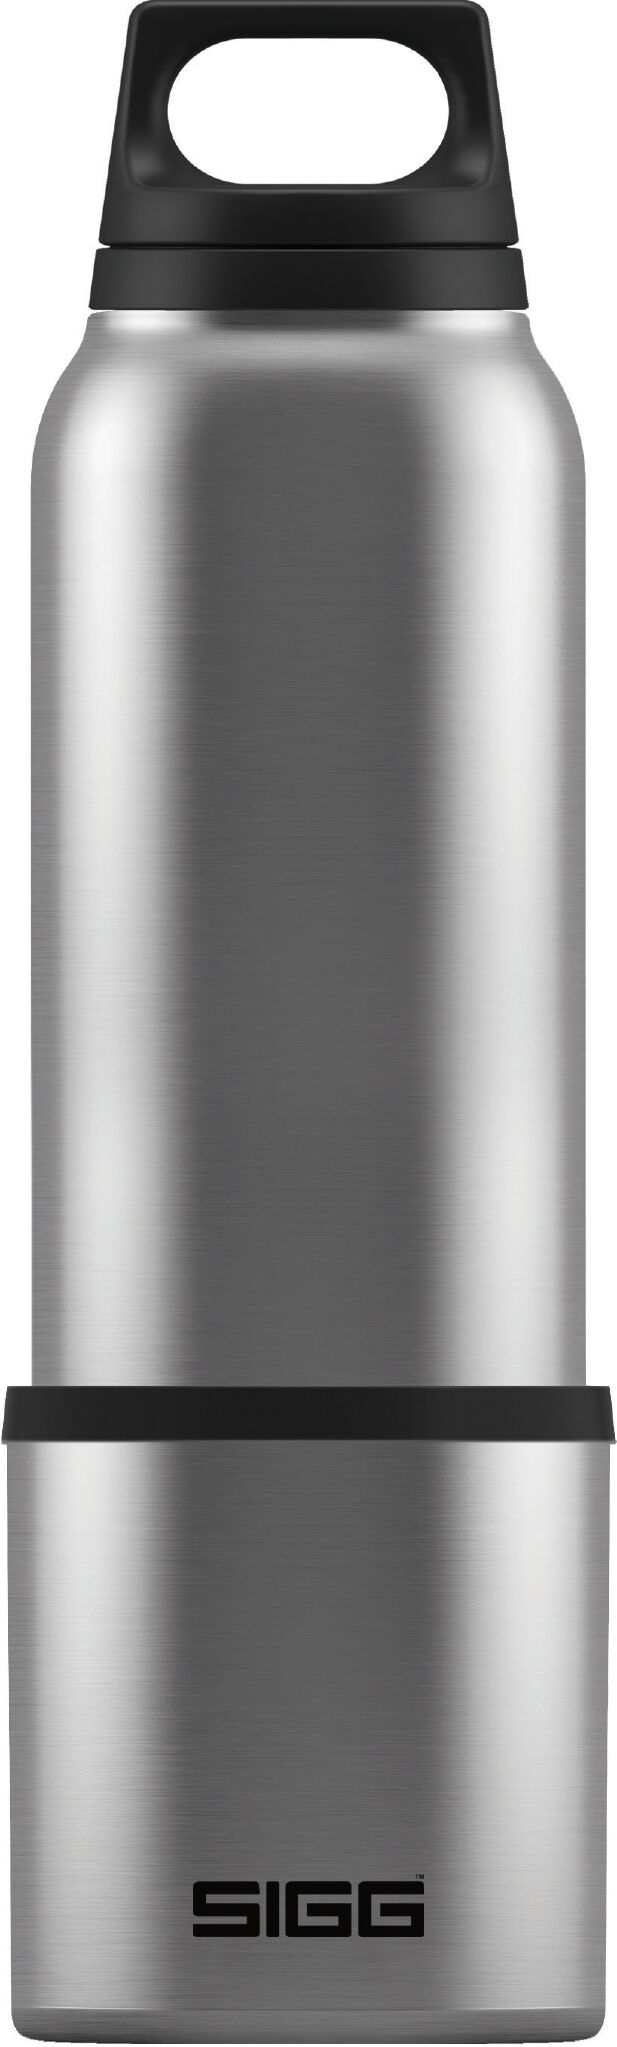 Sigg - Hot & Cold 0.75L Avec Cup - Vacuum flask